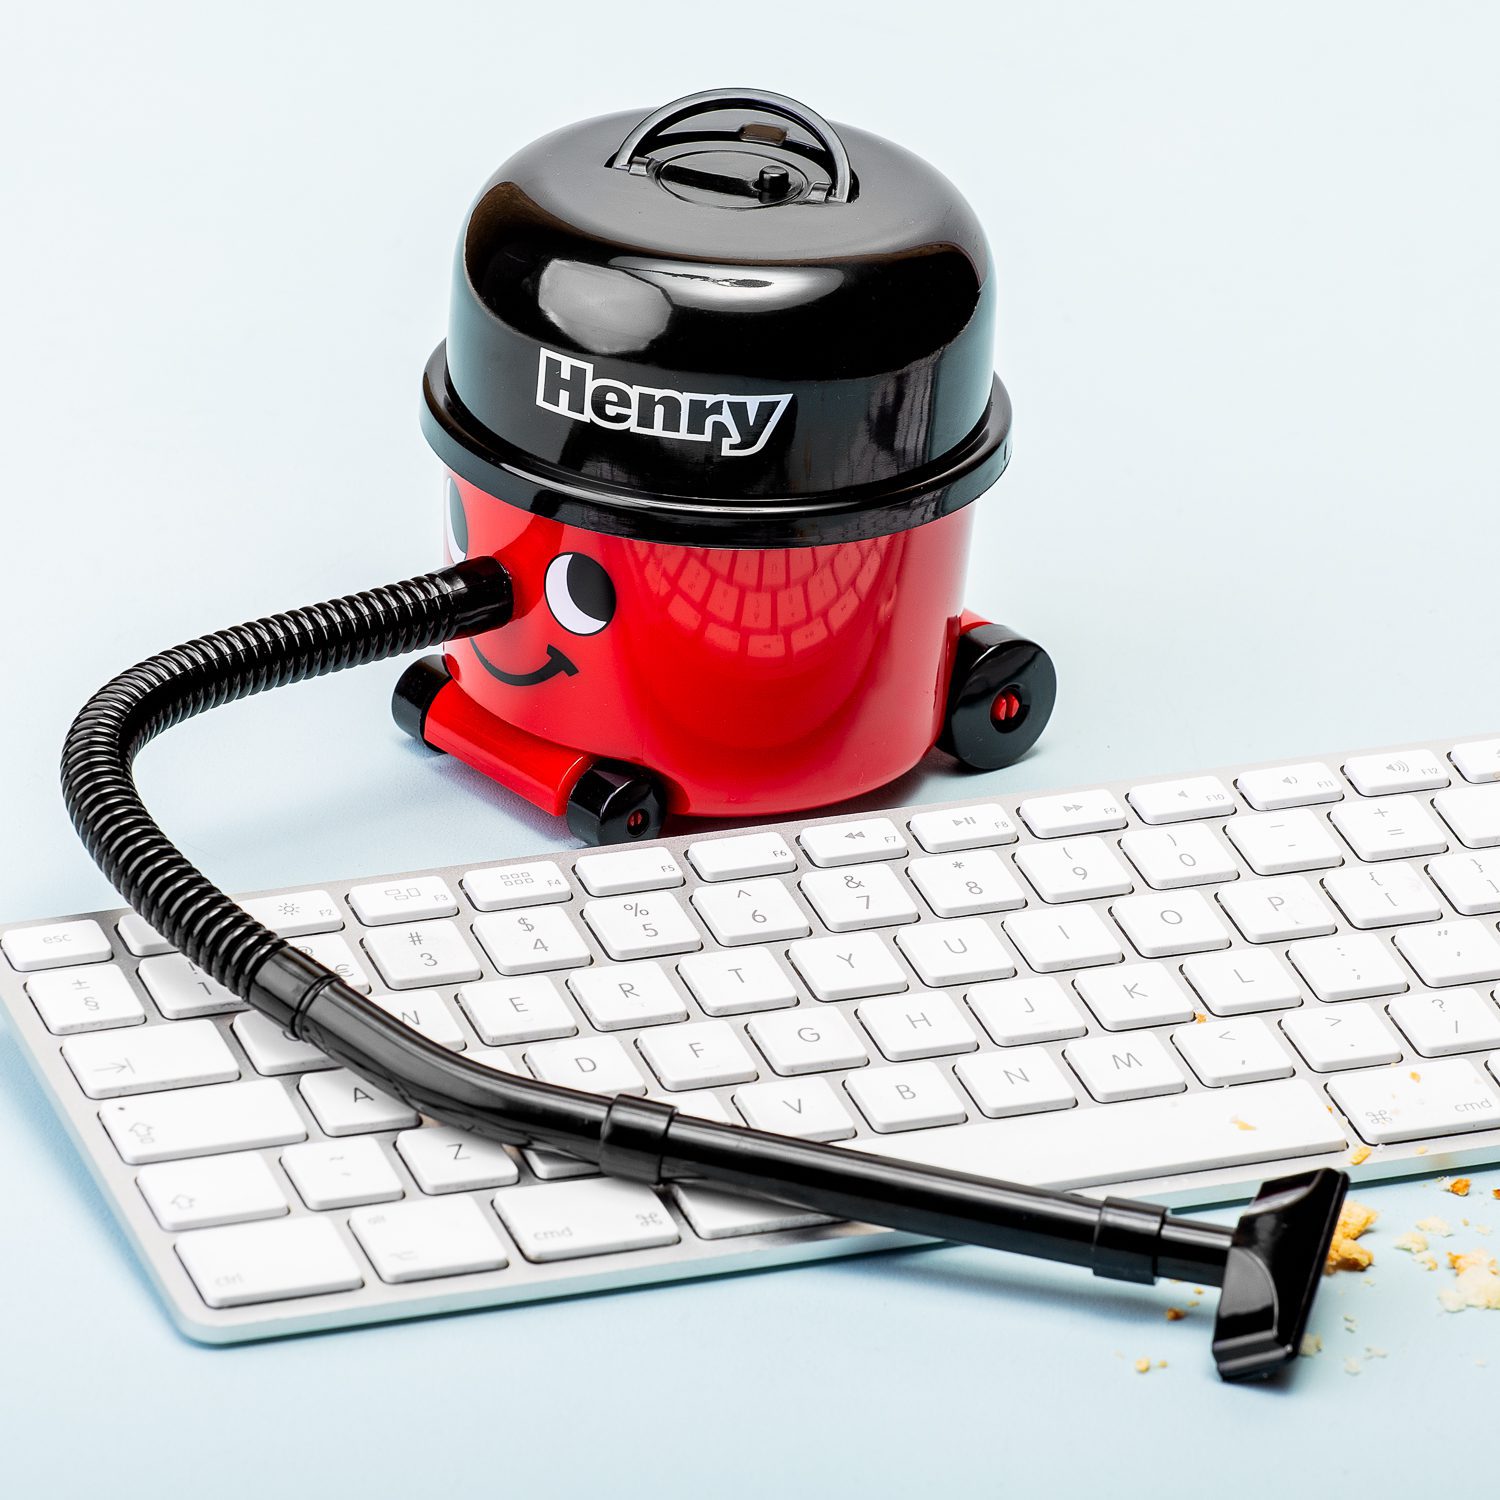 Mini Staubsauger Henry - kleiner PC Staubsauger für die Tastatur!